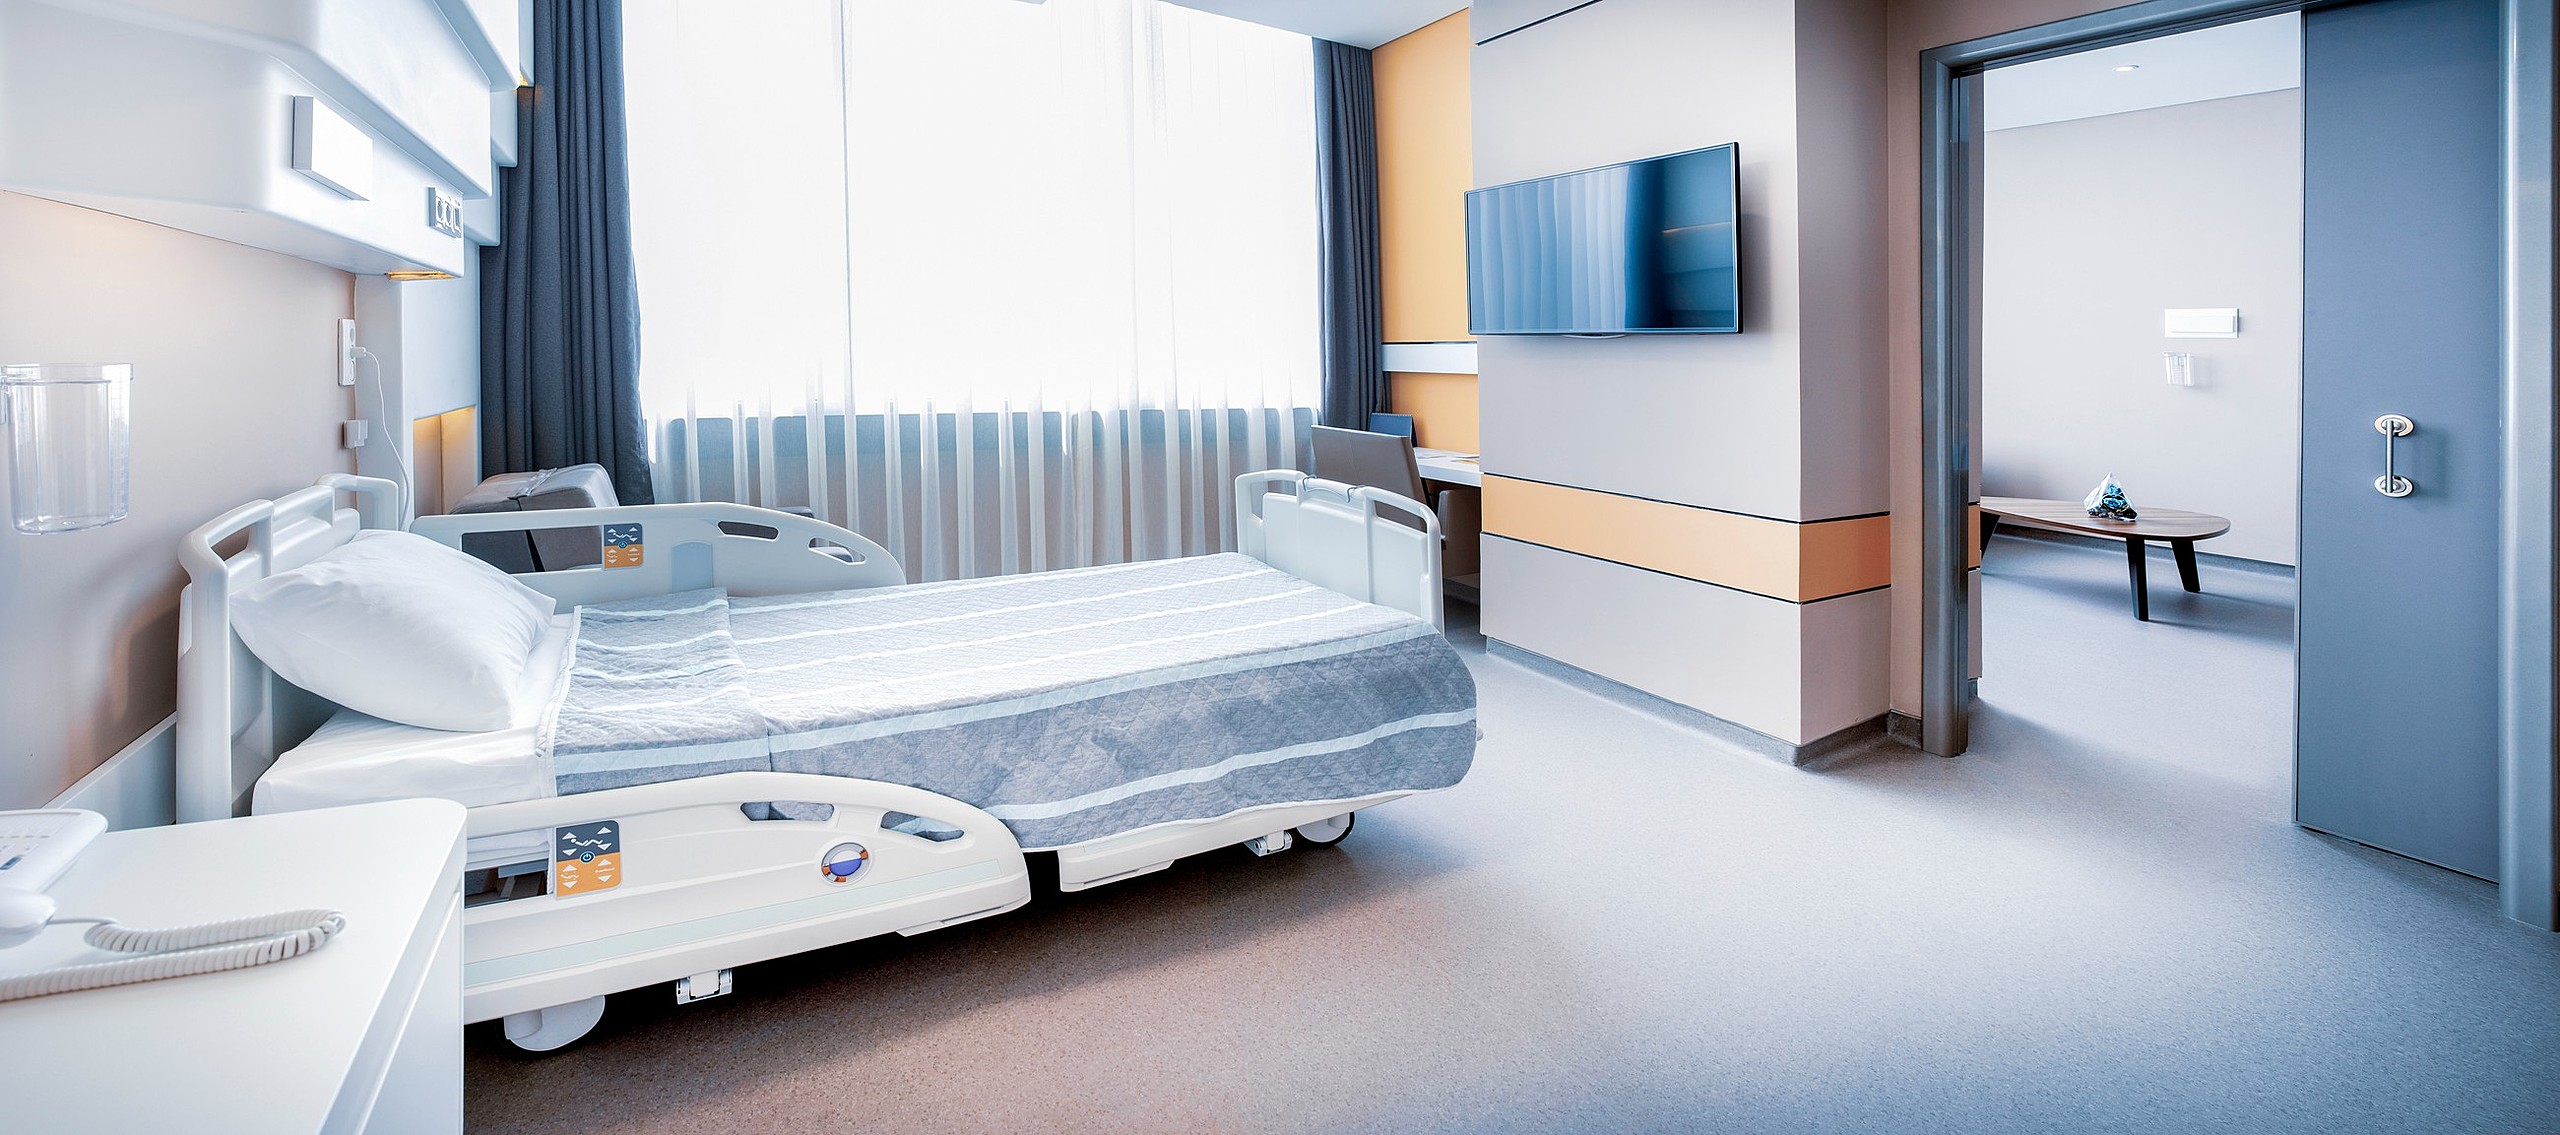 Hotelaria Hospitalar: Mais que conforto, também é saúde